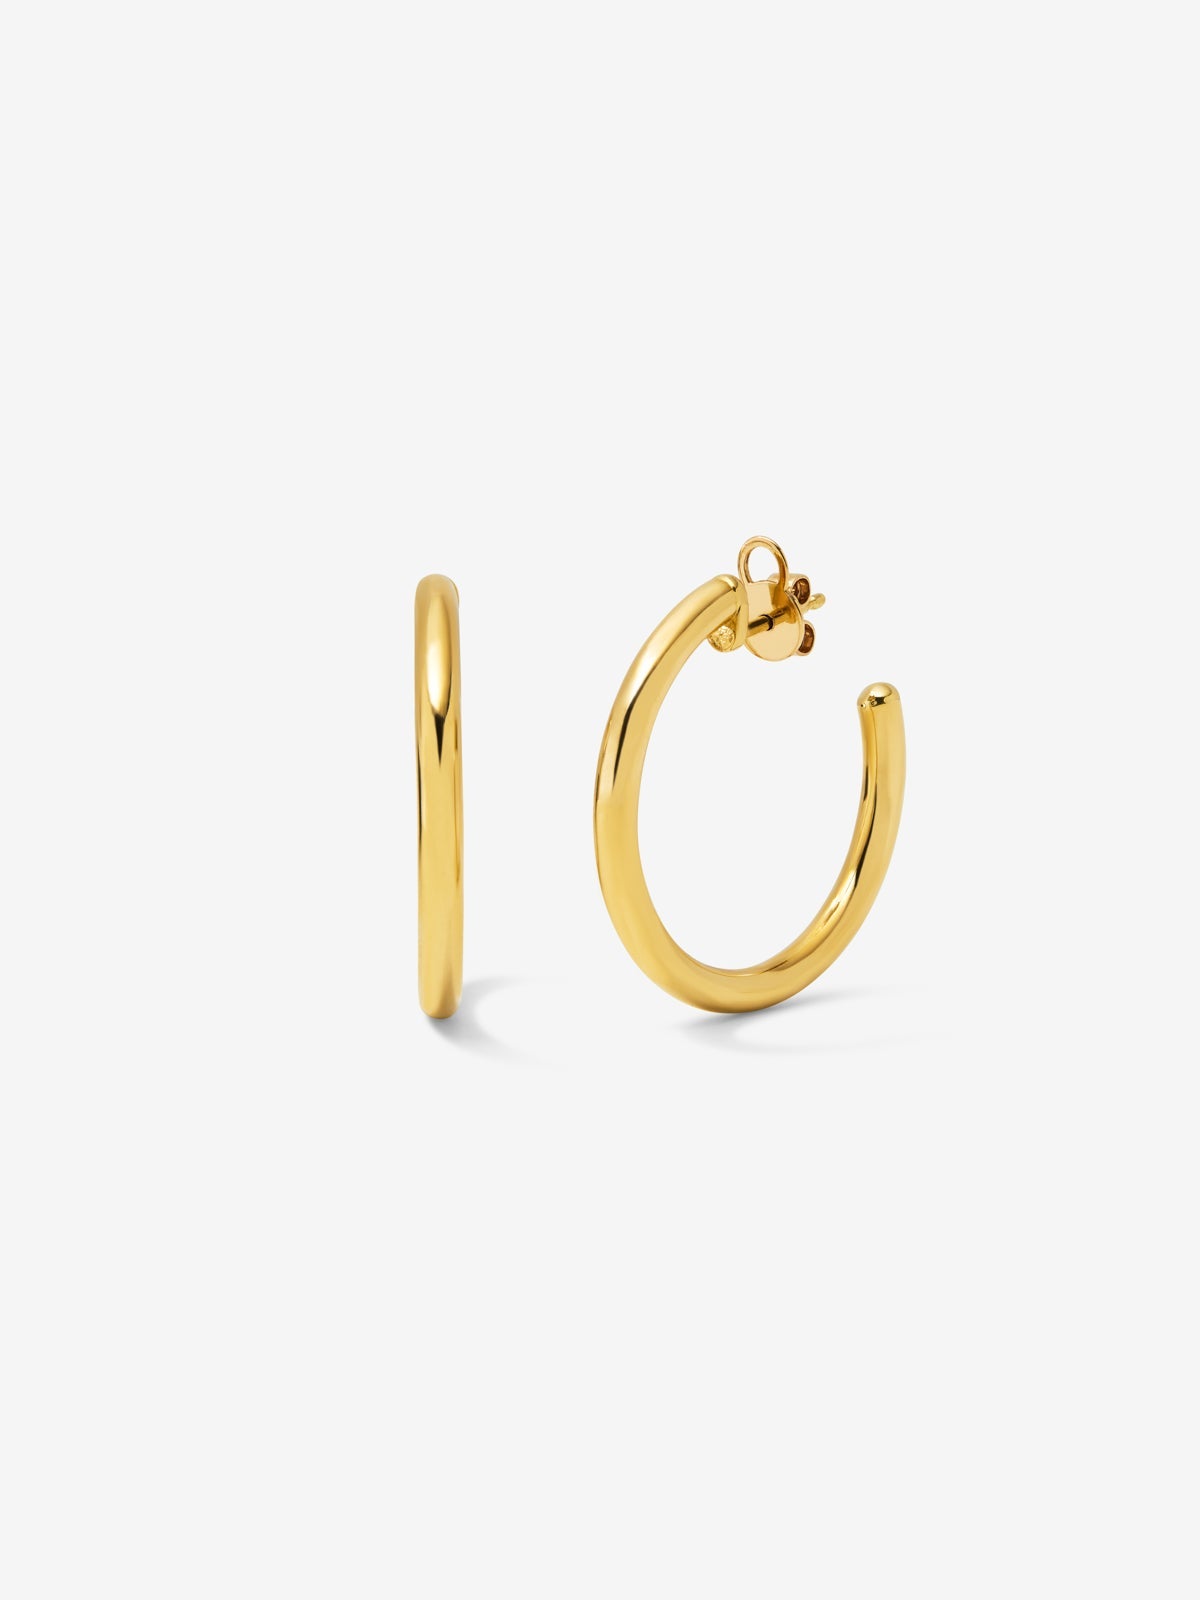 Medium smooth hoop earrings in 18K yellow gold.